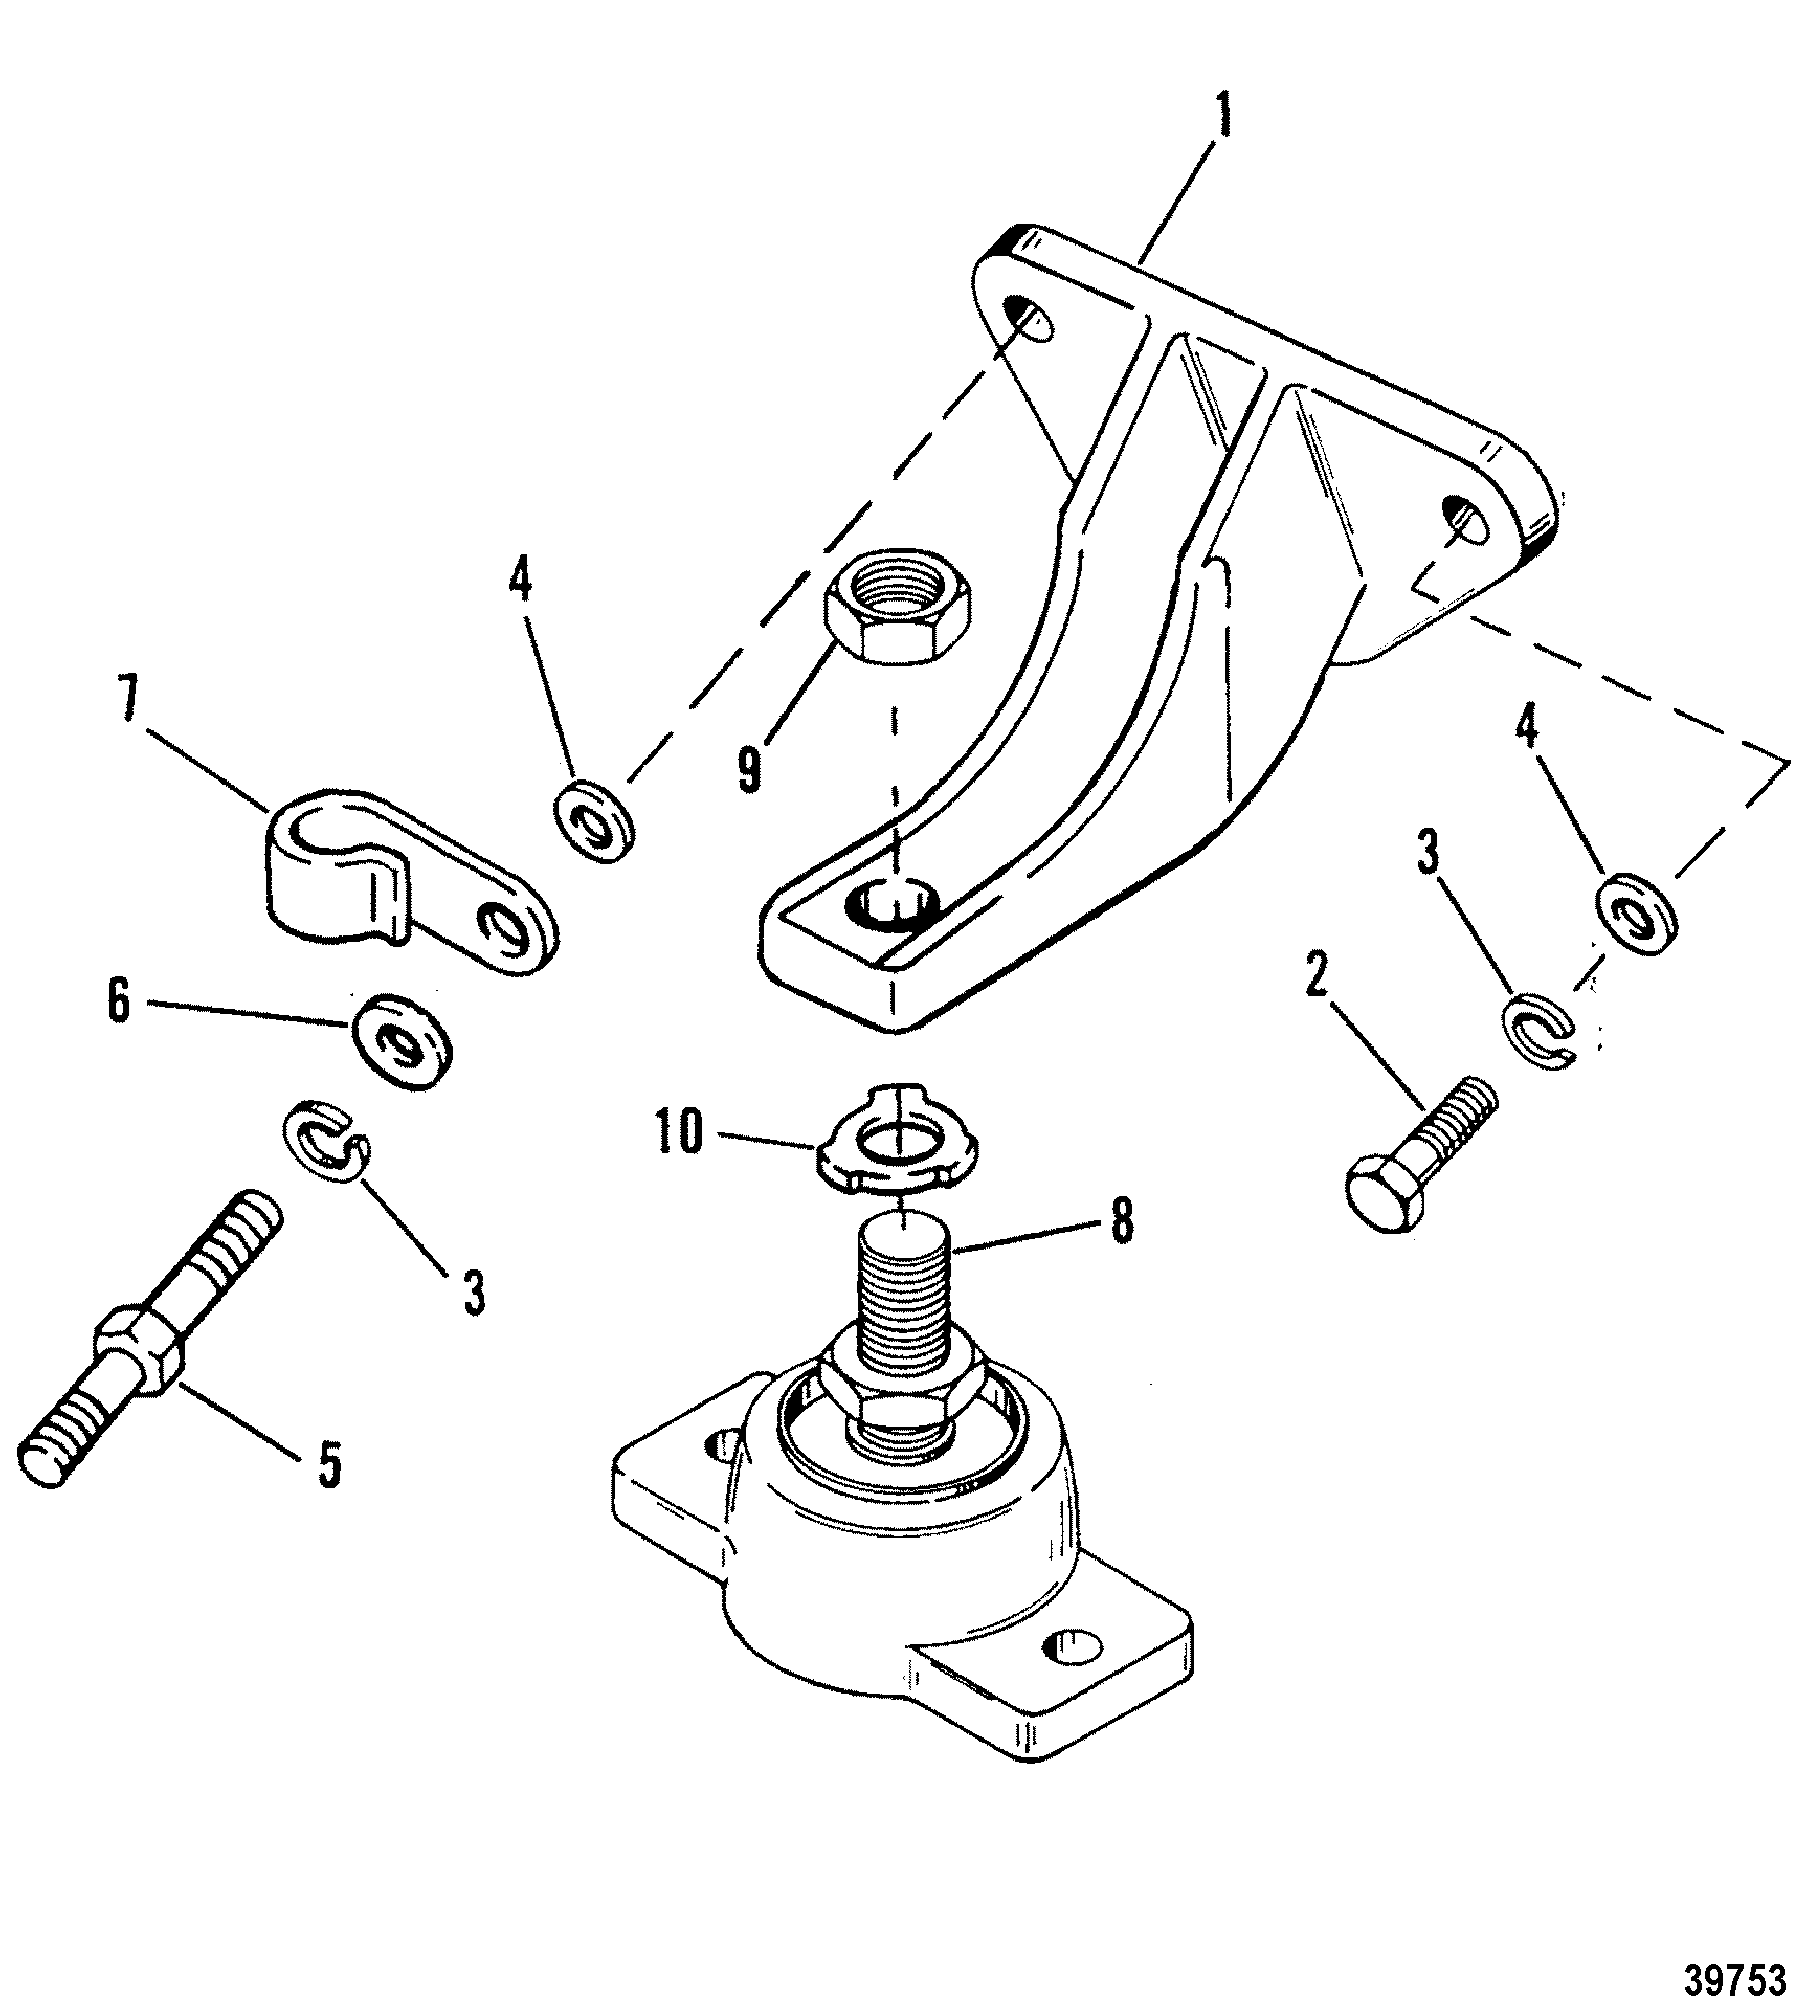 ENGINE MOUNTING(CAST BRACKET)